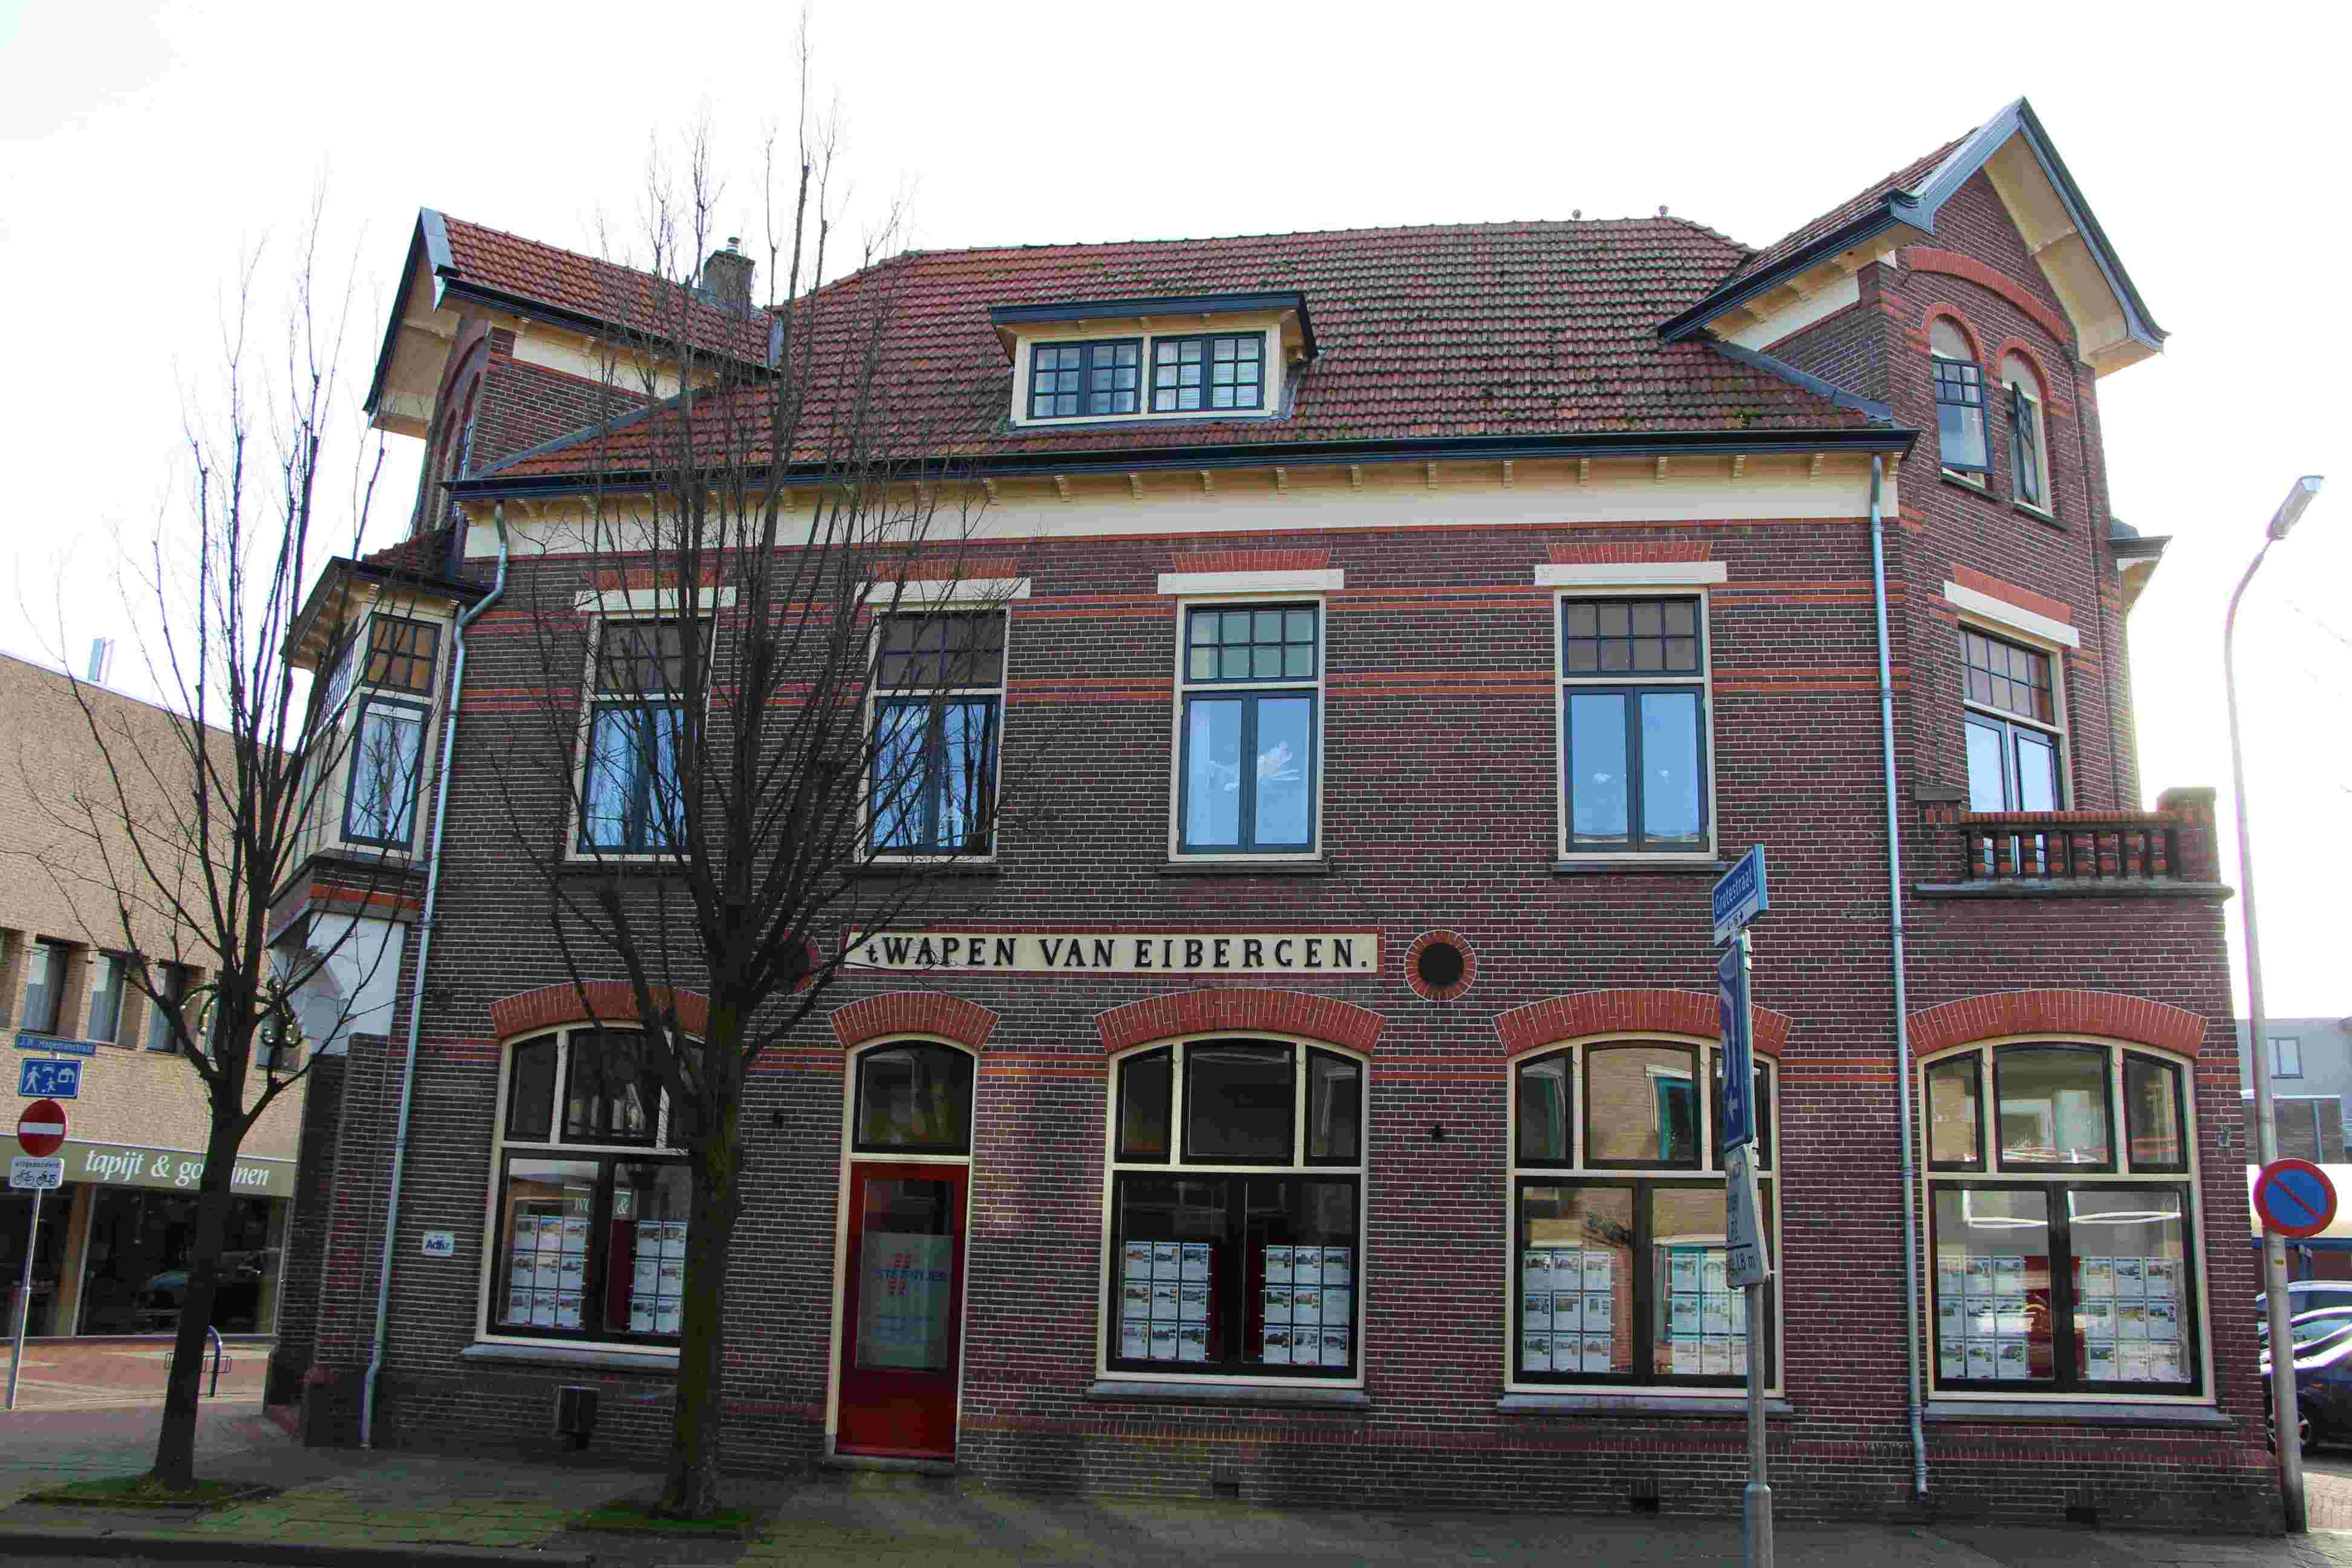 De voormalige horecazaak het Wapen van Eibergen op de hoek Grotestraat-J.W. Hagemanstraat is gelukkig dankzij het particuliere initiatief behouden gebleven.